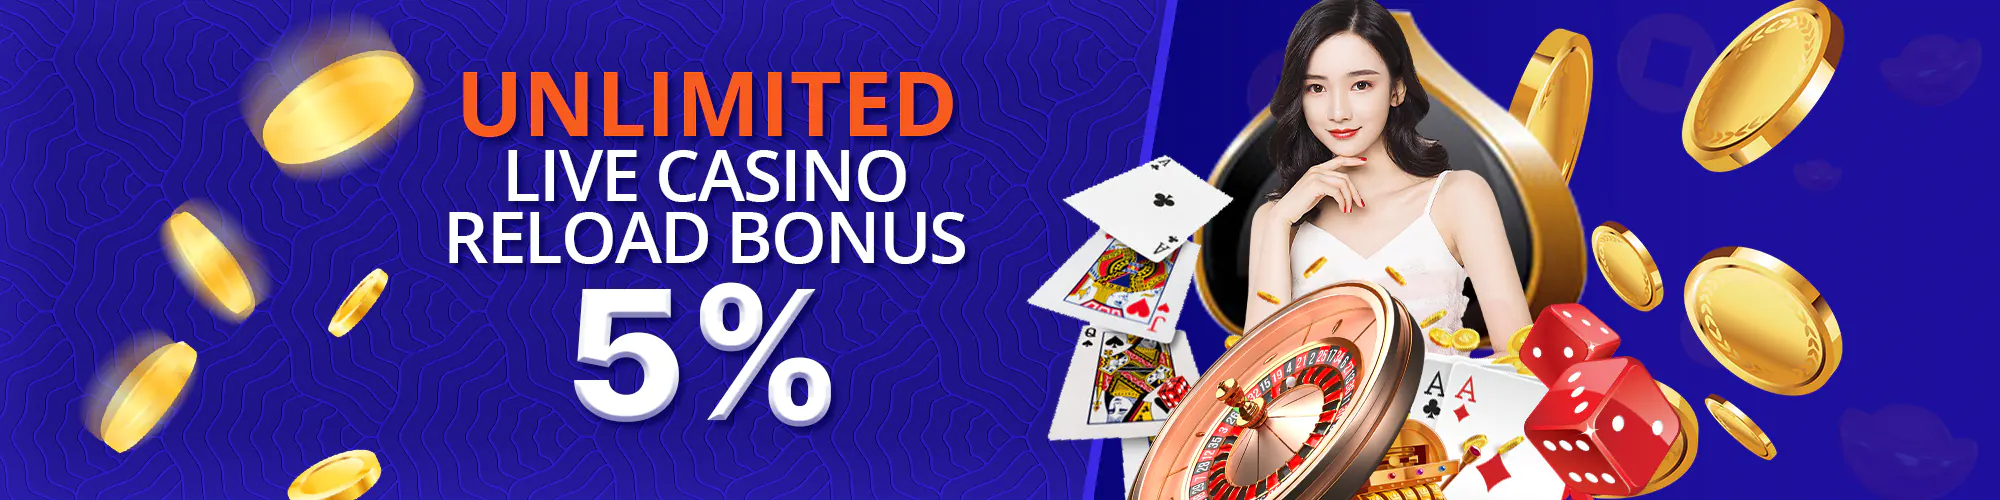 5% Unlimited Live Casino Reload Bonus